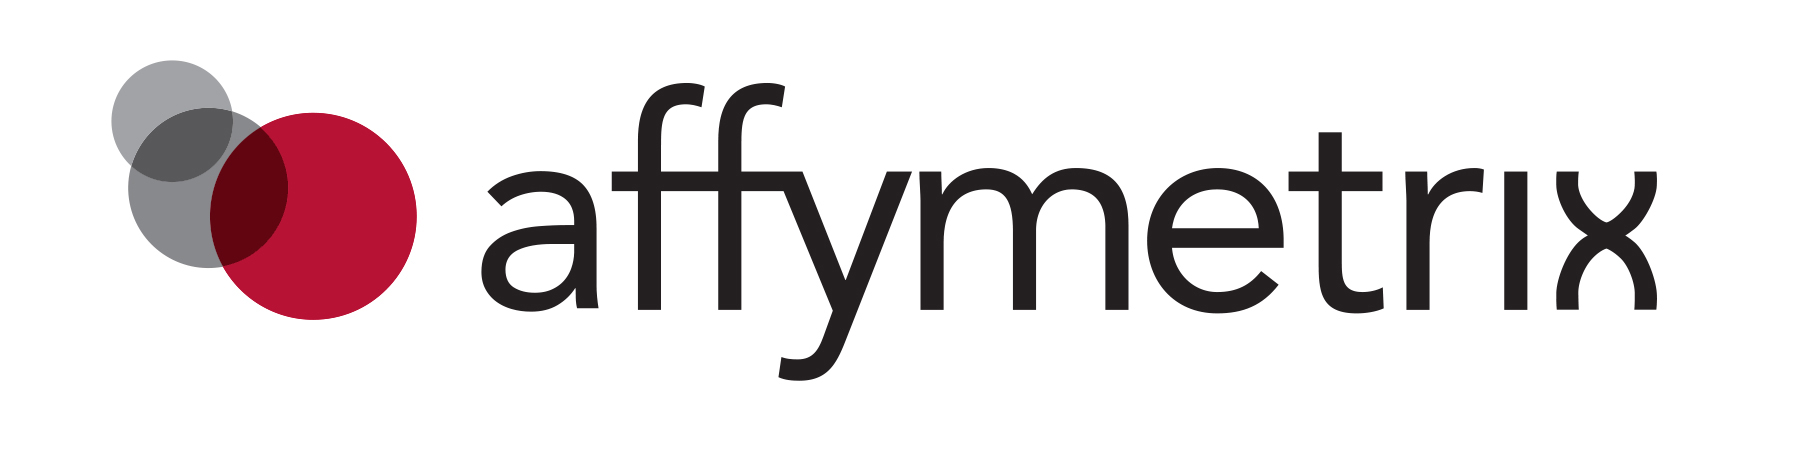 Affy logo-no underline